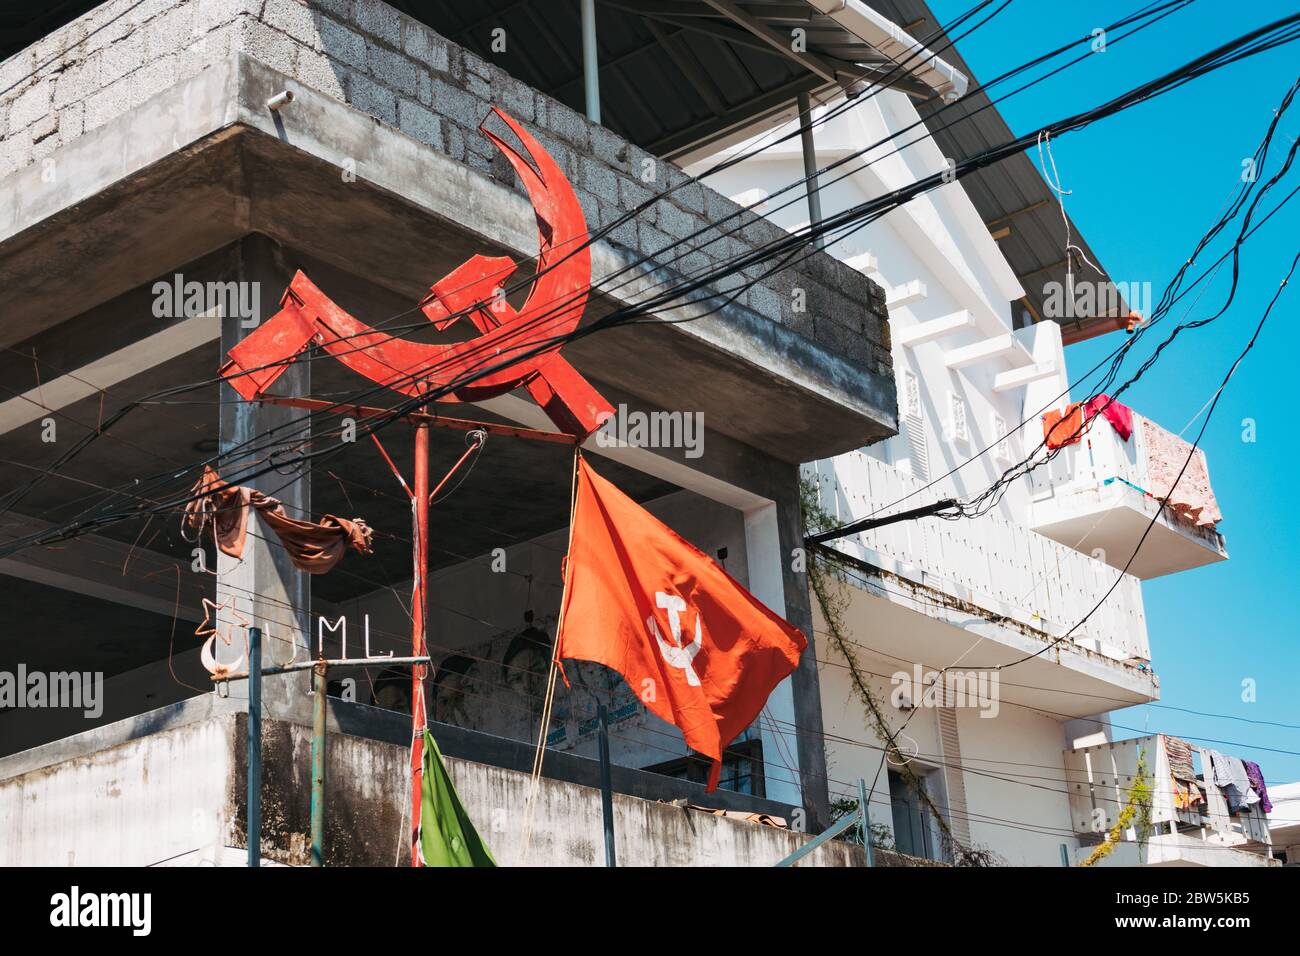 Un marteau et une faucille communistes et un drapeau du Parti communiste de l'Inde (marxiste) sur un coin de rue à fort Kochi, Kerala, Inde Banque D'Images